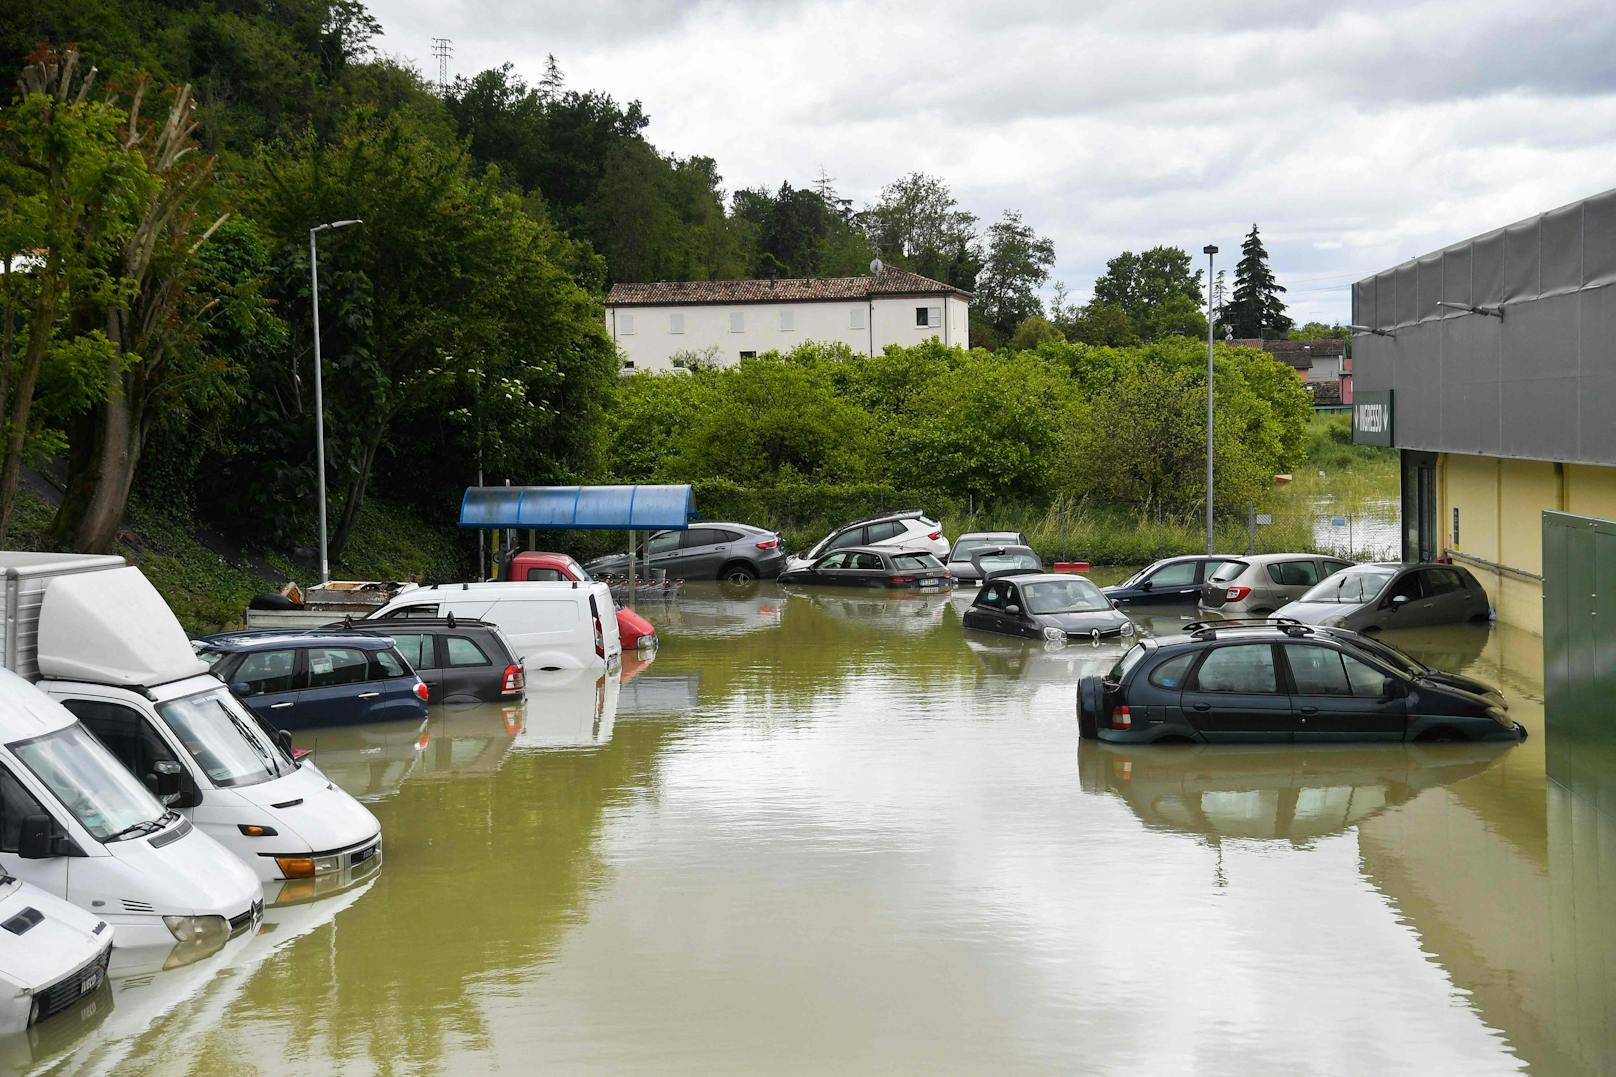 Ein weiteres Bild des gefluteten Supermarkt-Parkplatzes in Cesena.